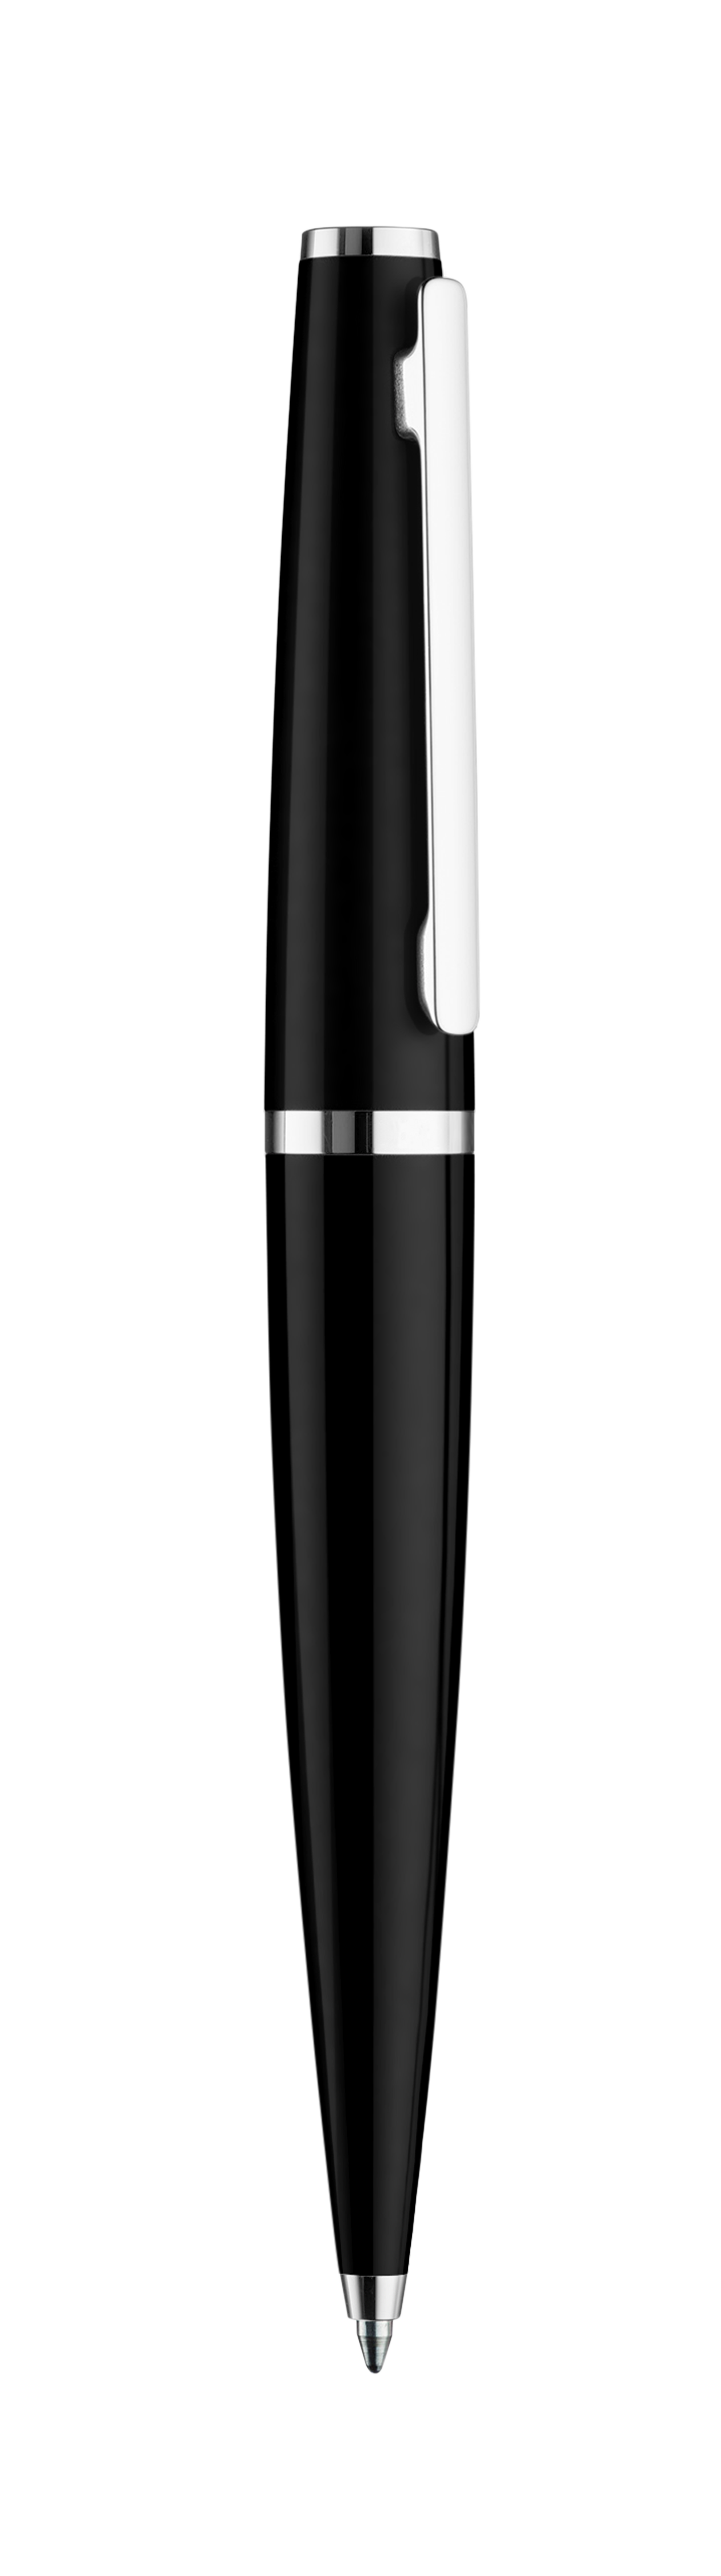 Kugelschreiber schwarz glanz/platiniert - Design 06